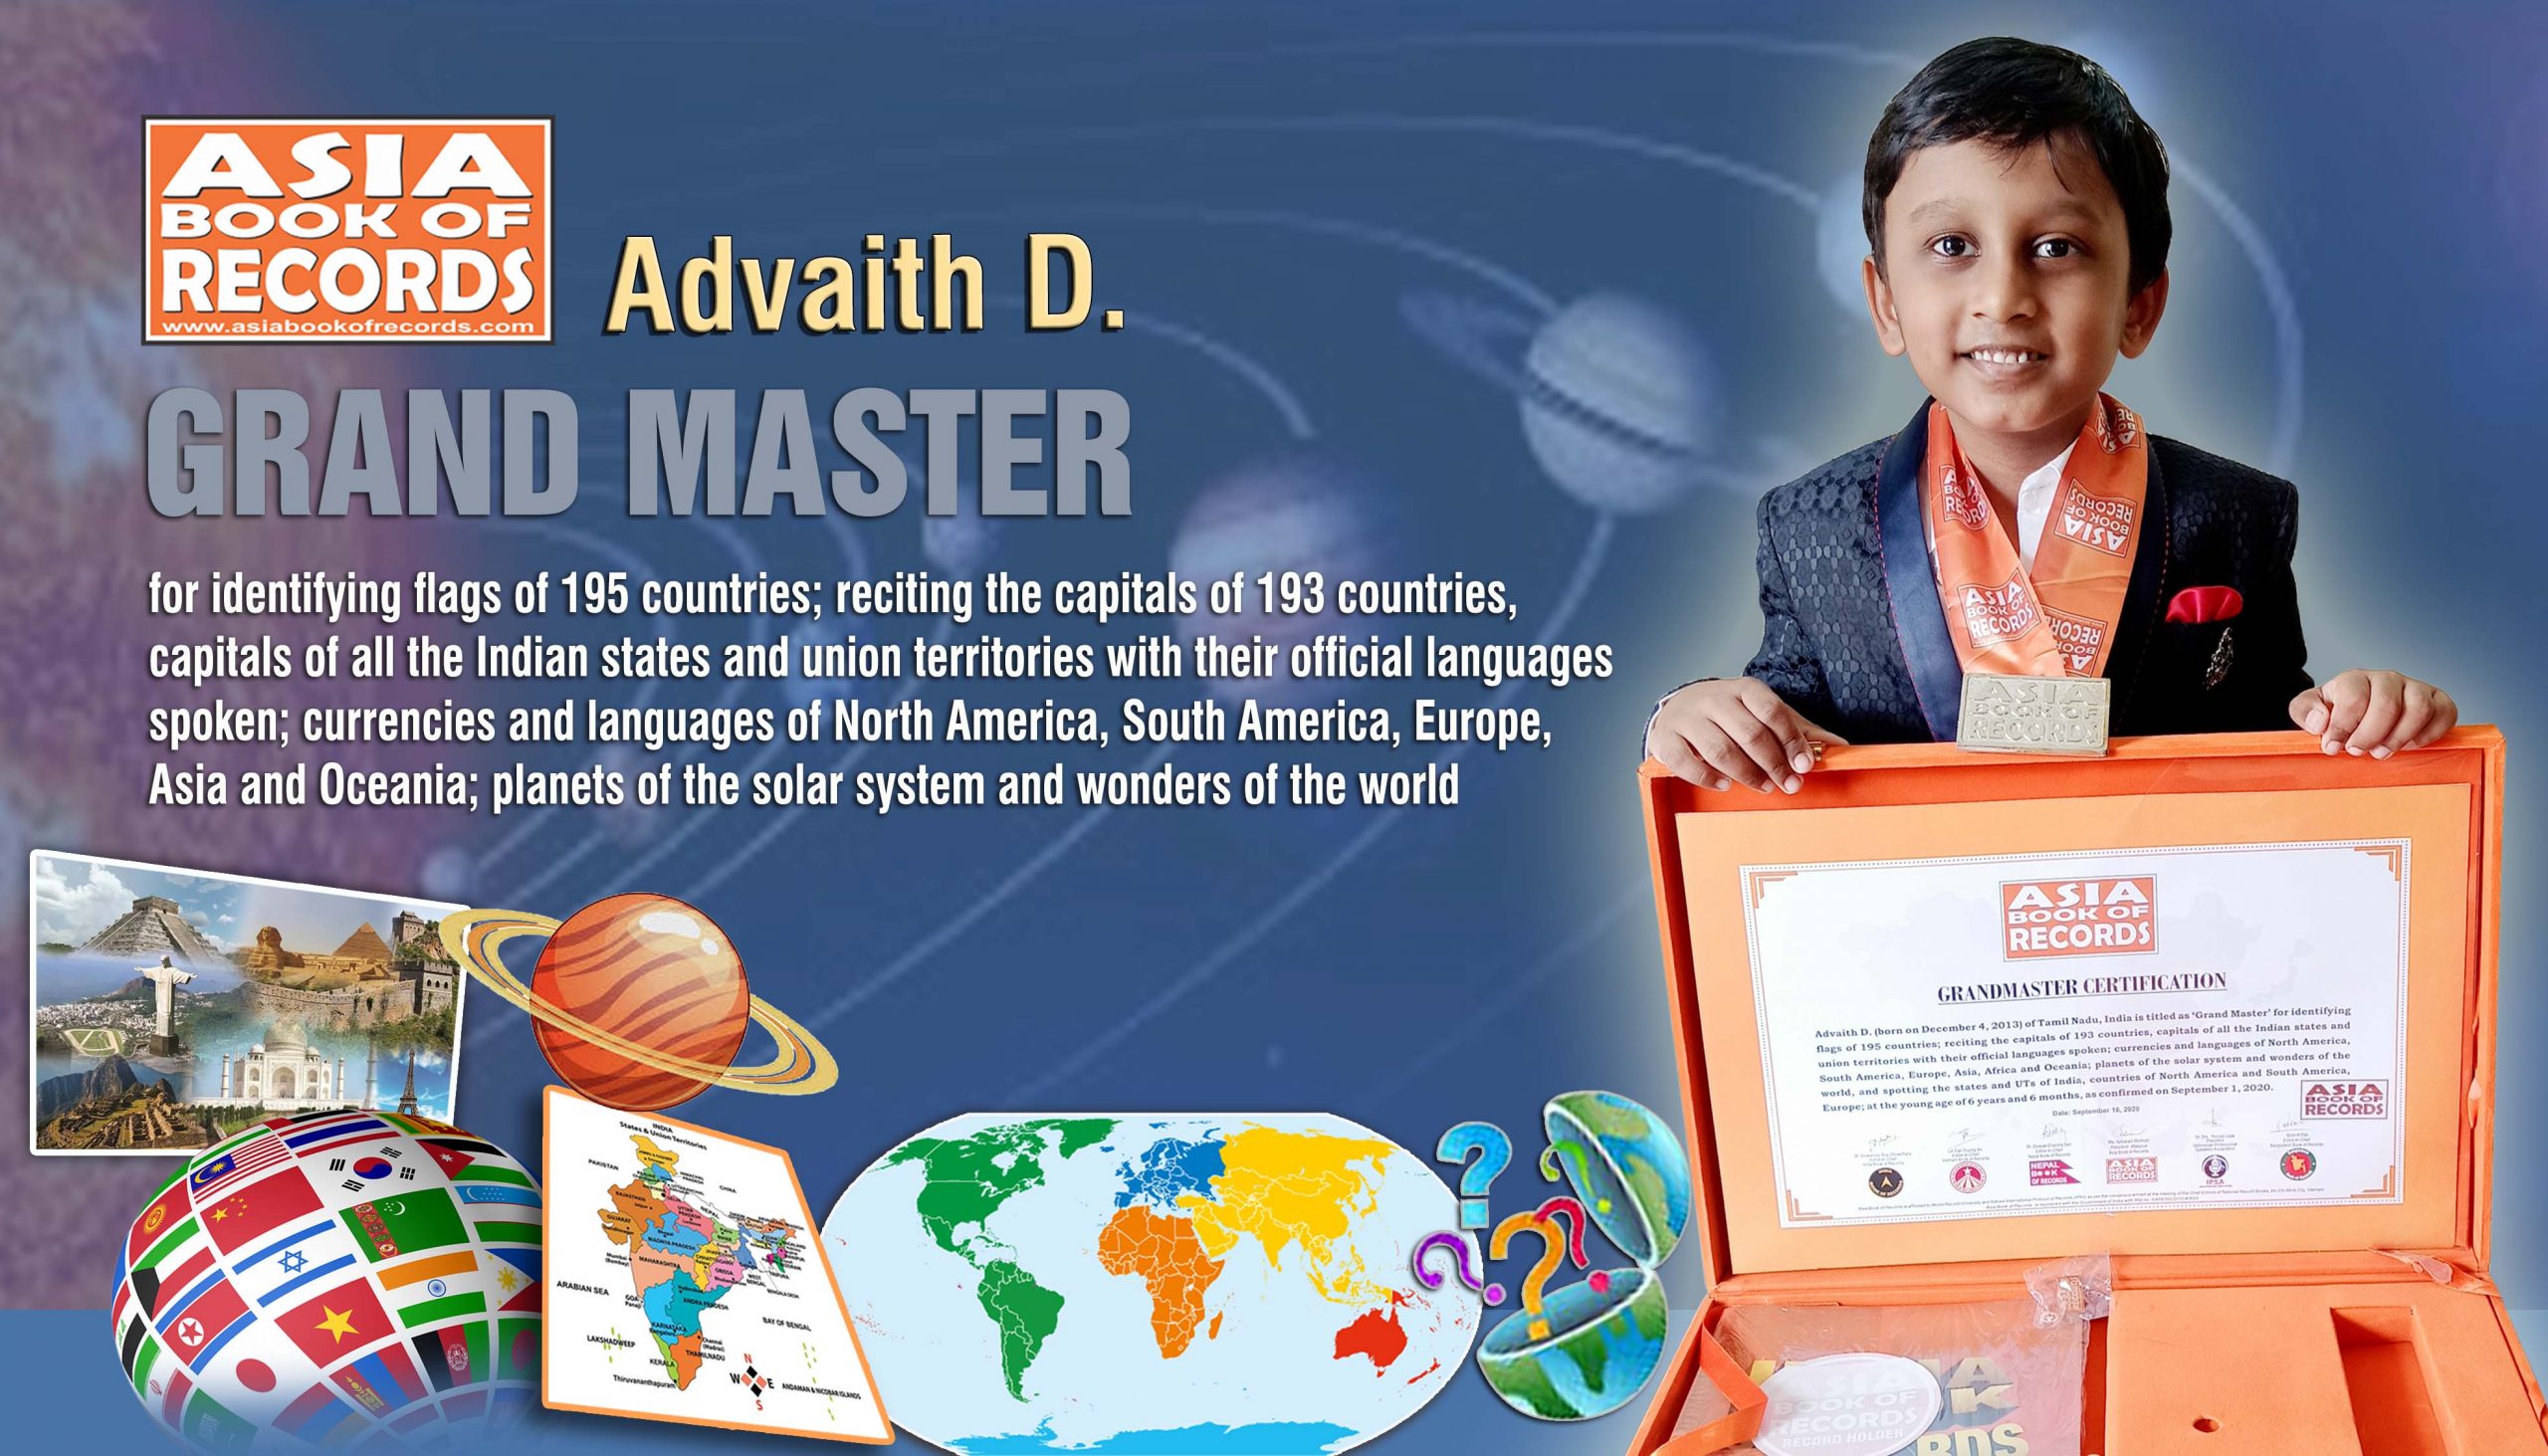 Grand Master – Abhinav D.